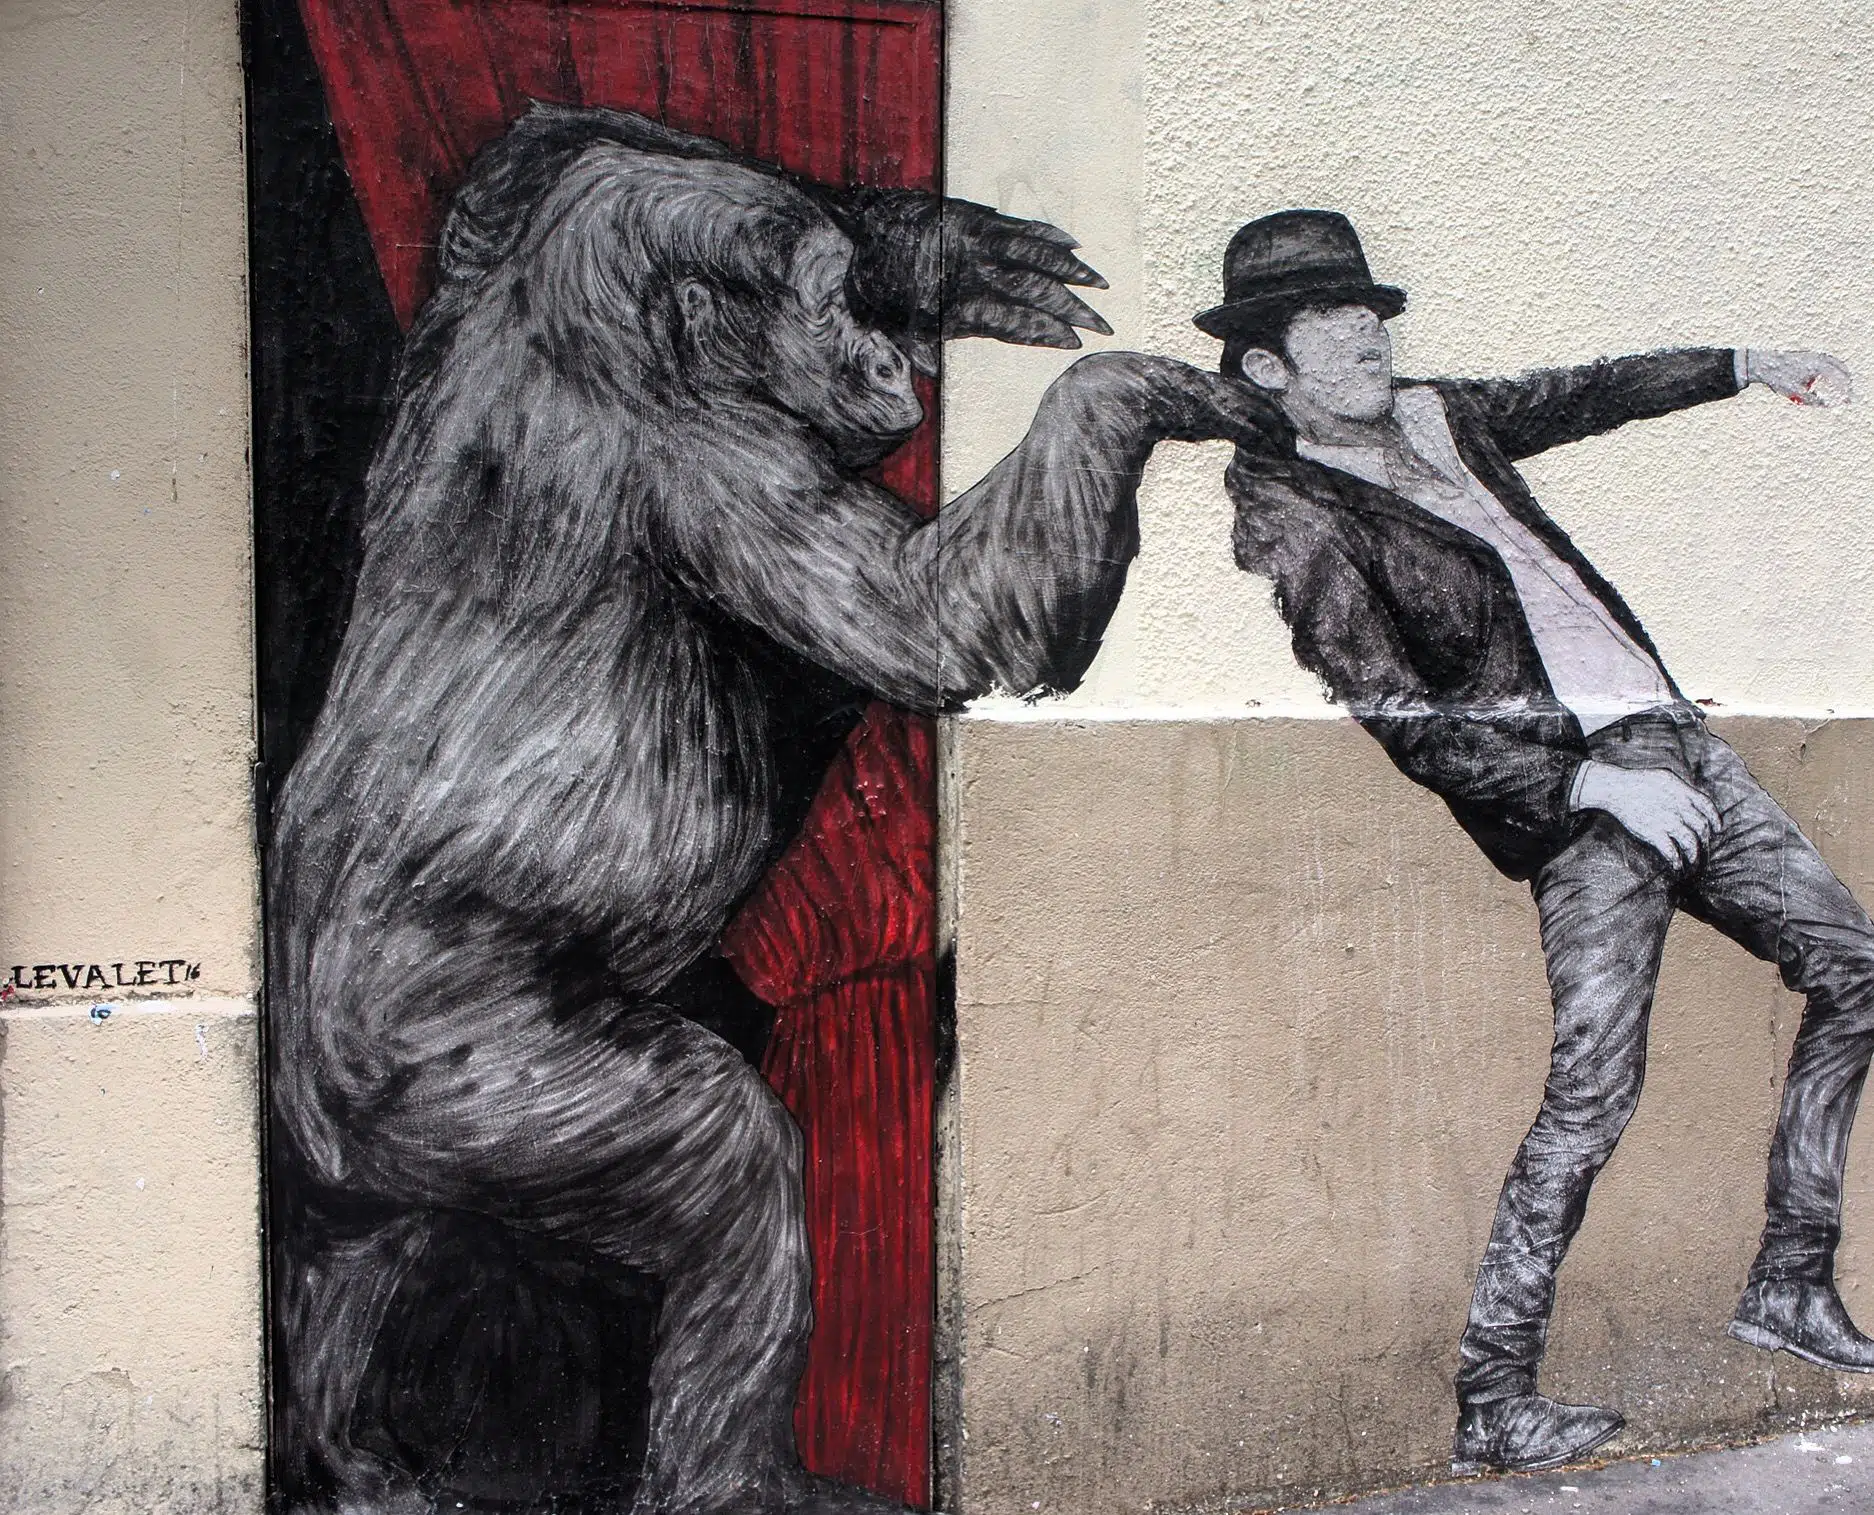 street art - levalet - gorila